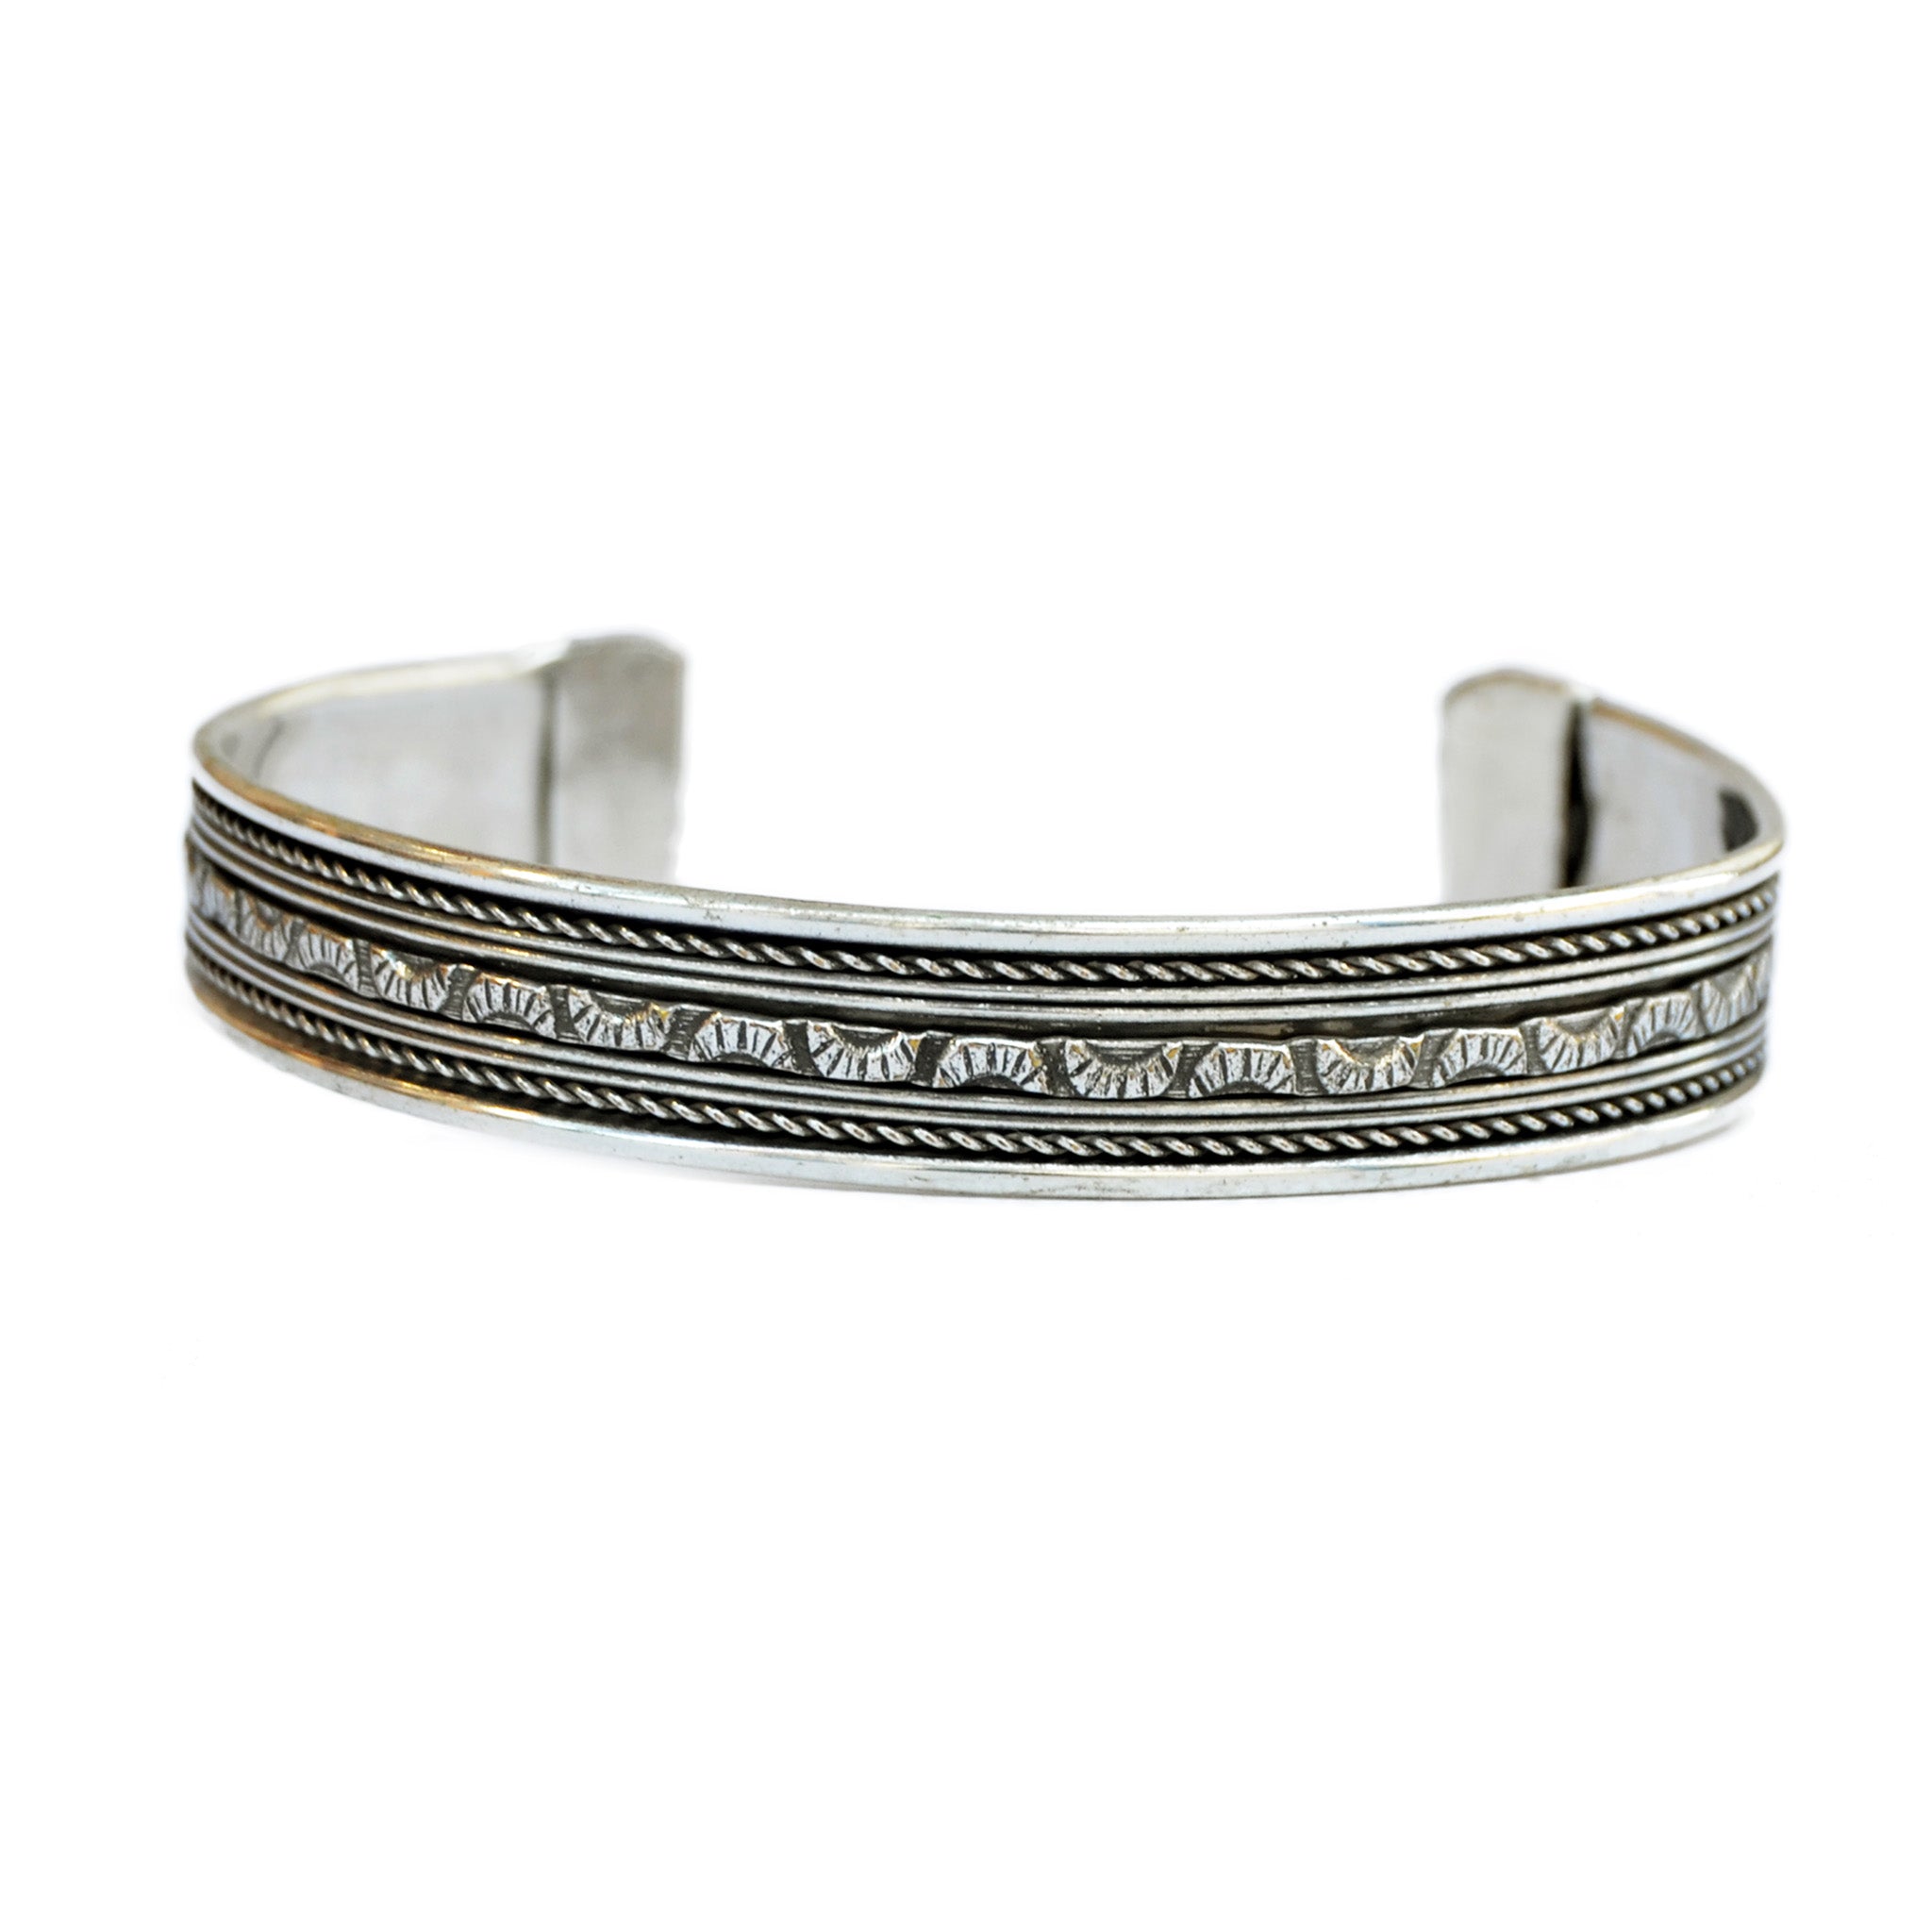 Bohemin silver bracelet